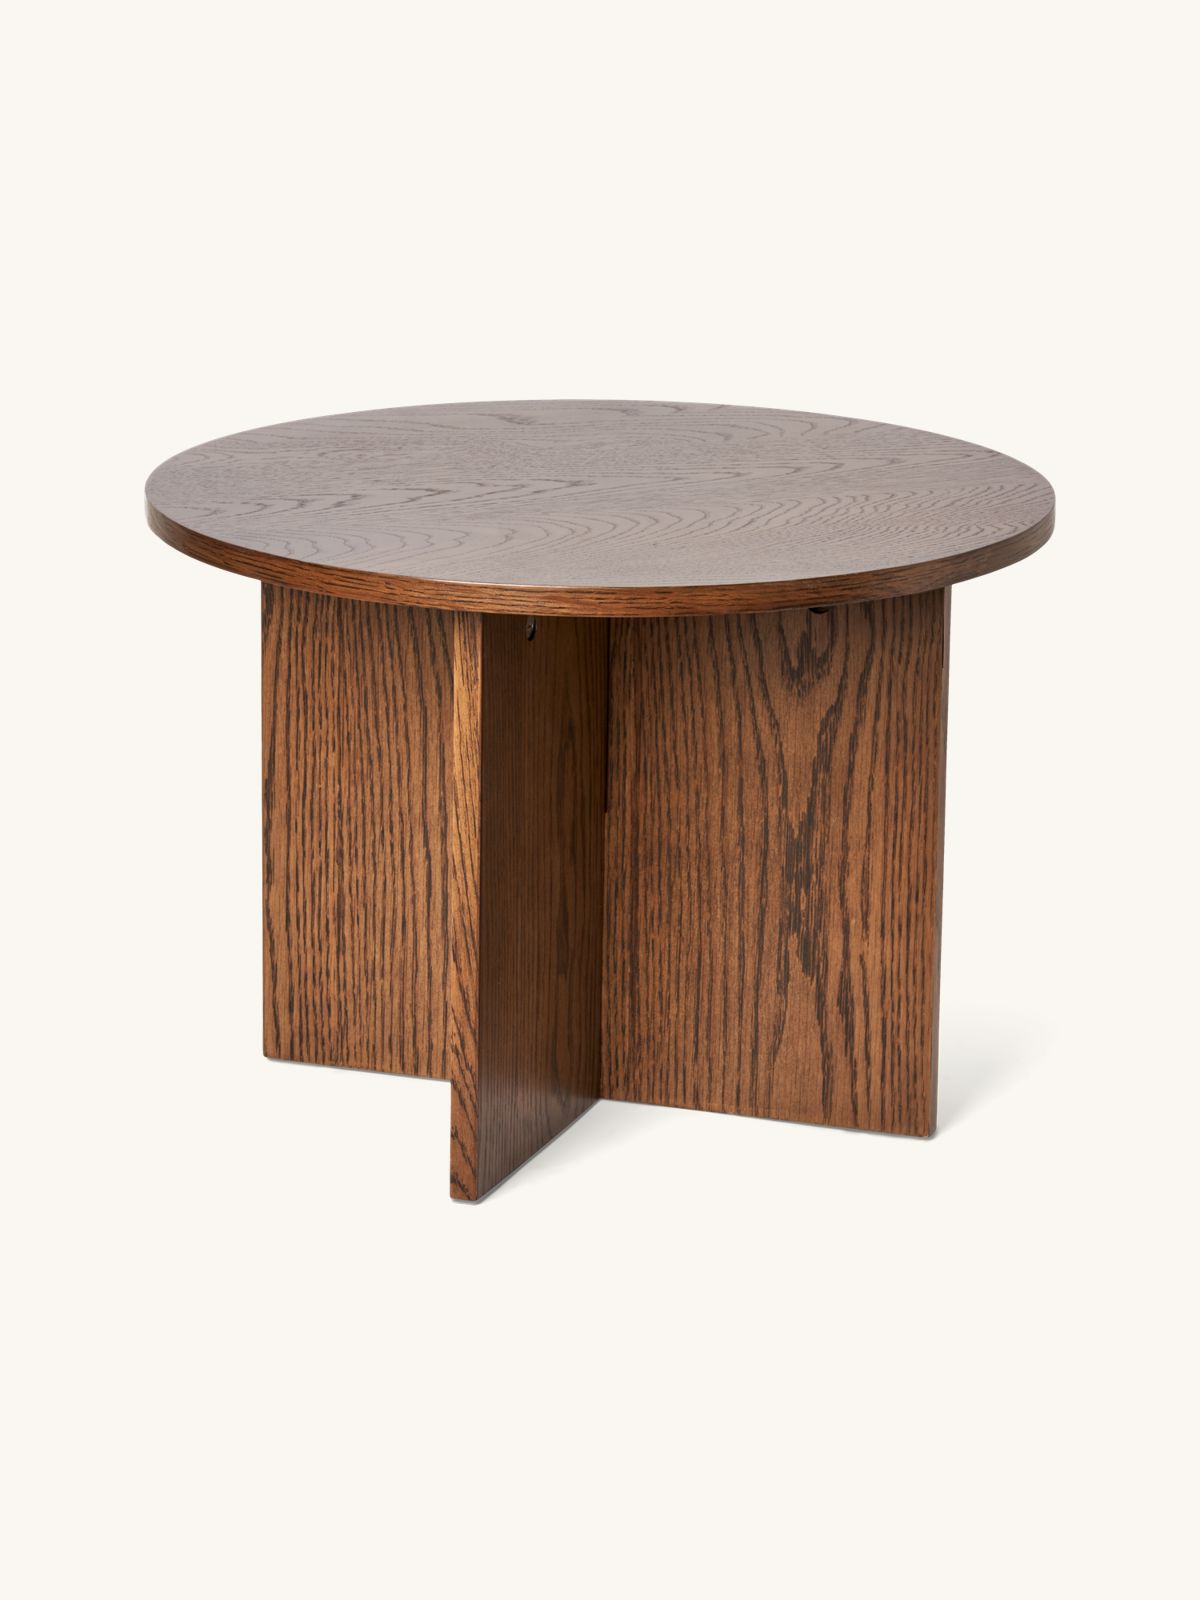 Side table | MDF/oak veneer. Ø50 x 35 cm. | Søstrene Grene